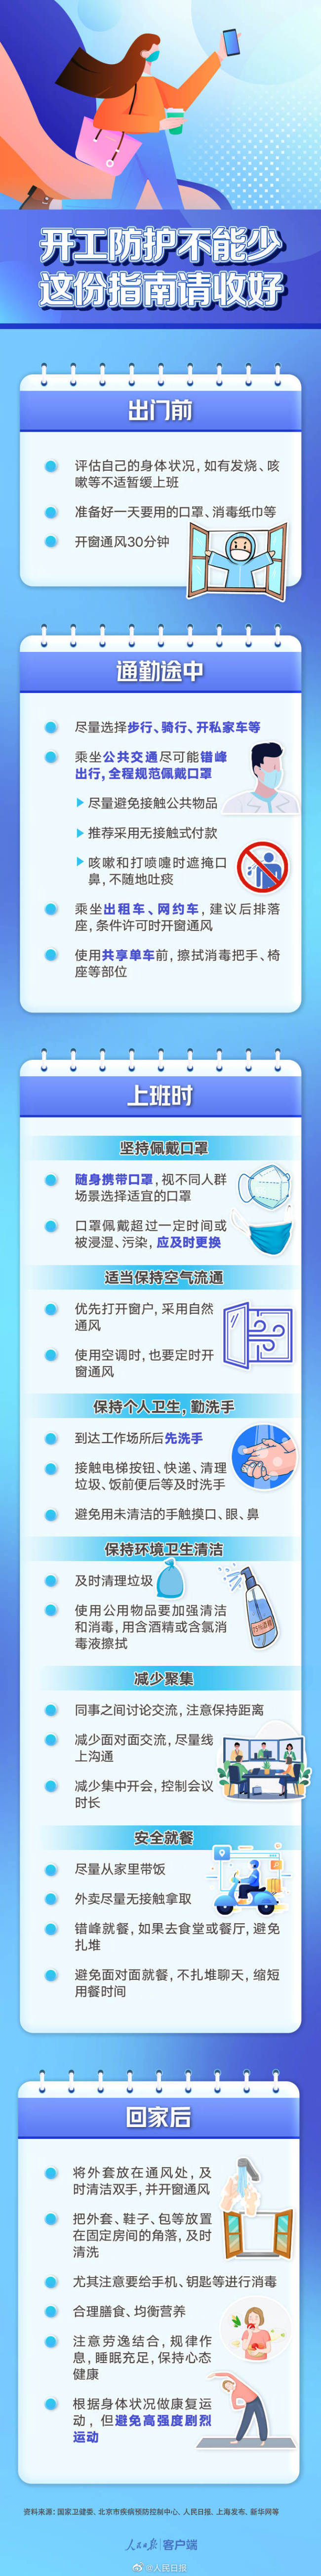 7月15日，北京中小学将放暑假 - 888 Casino - Peraplay.Net 百度热点快讯